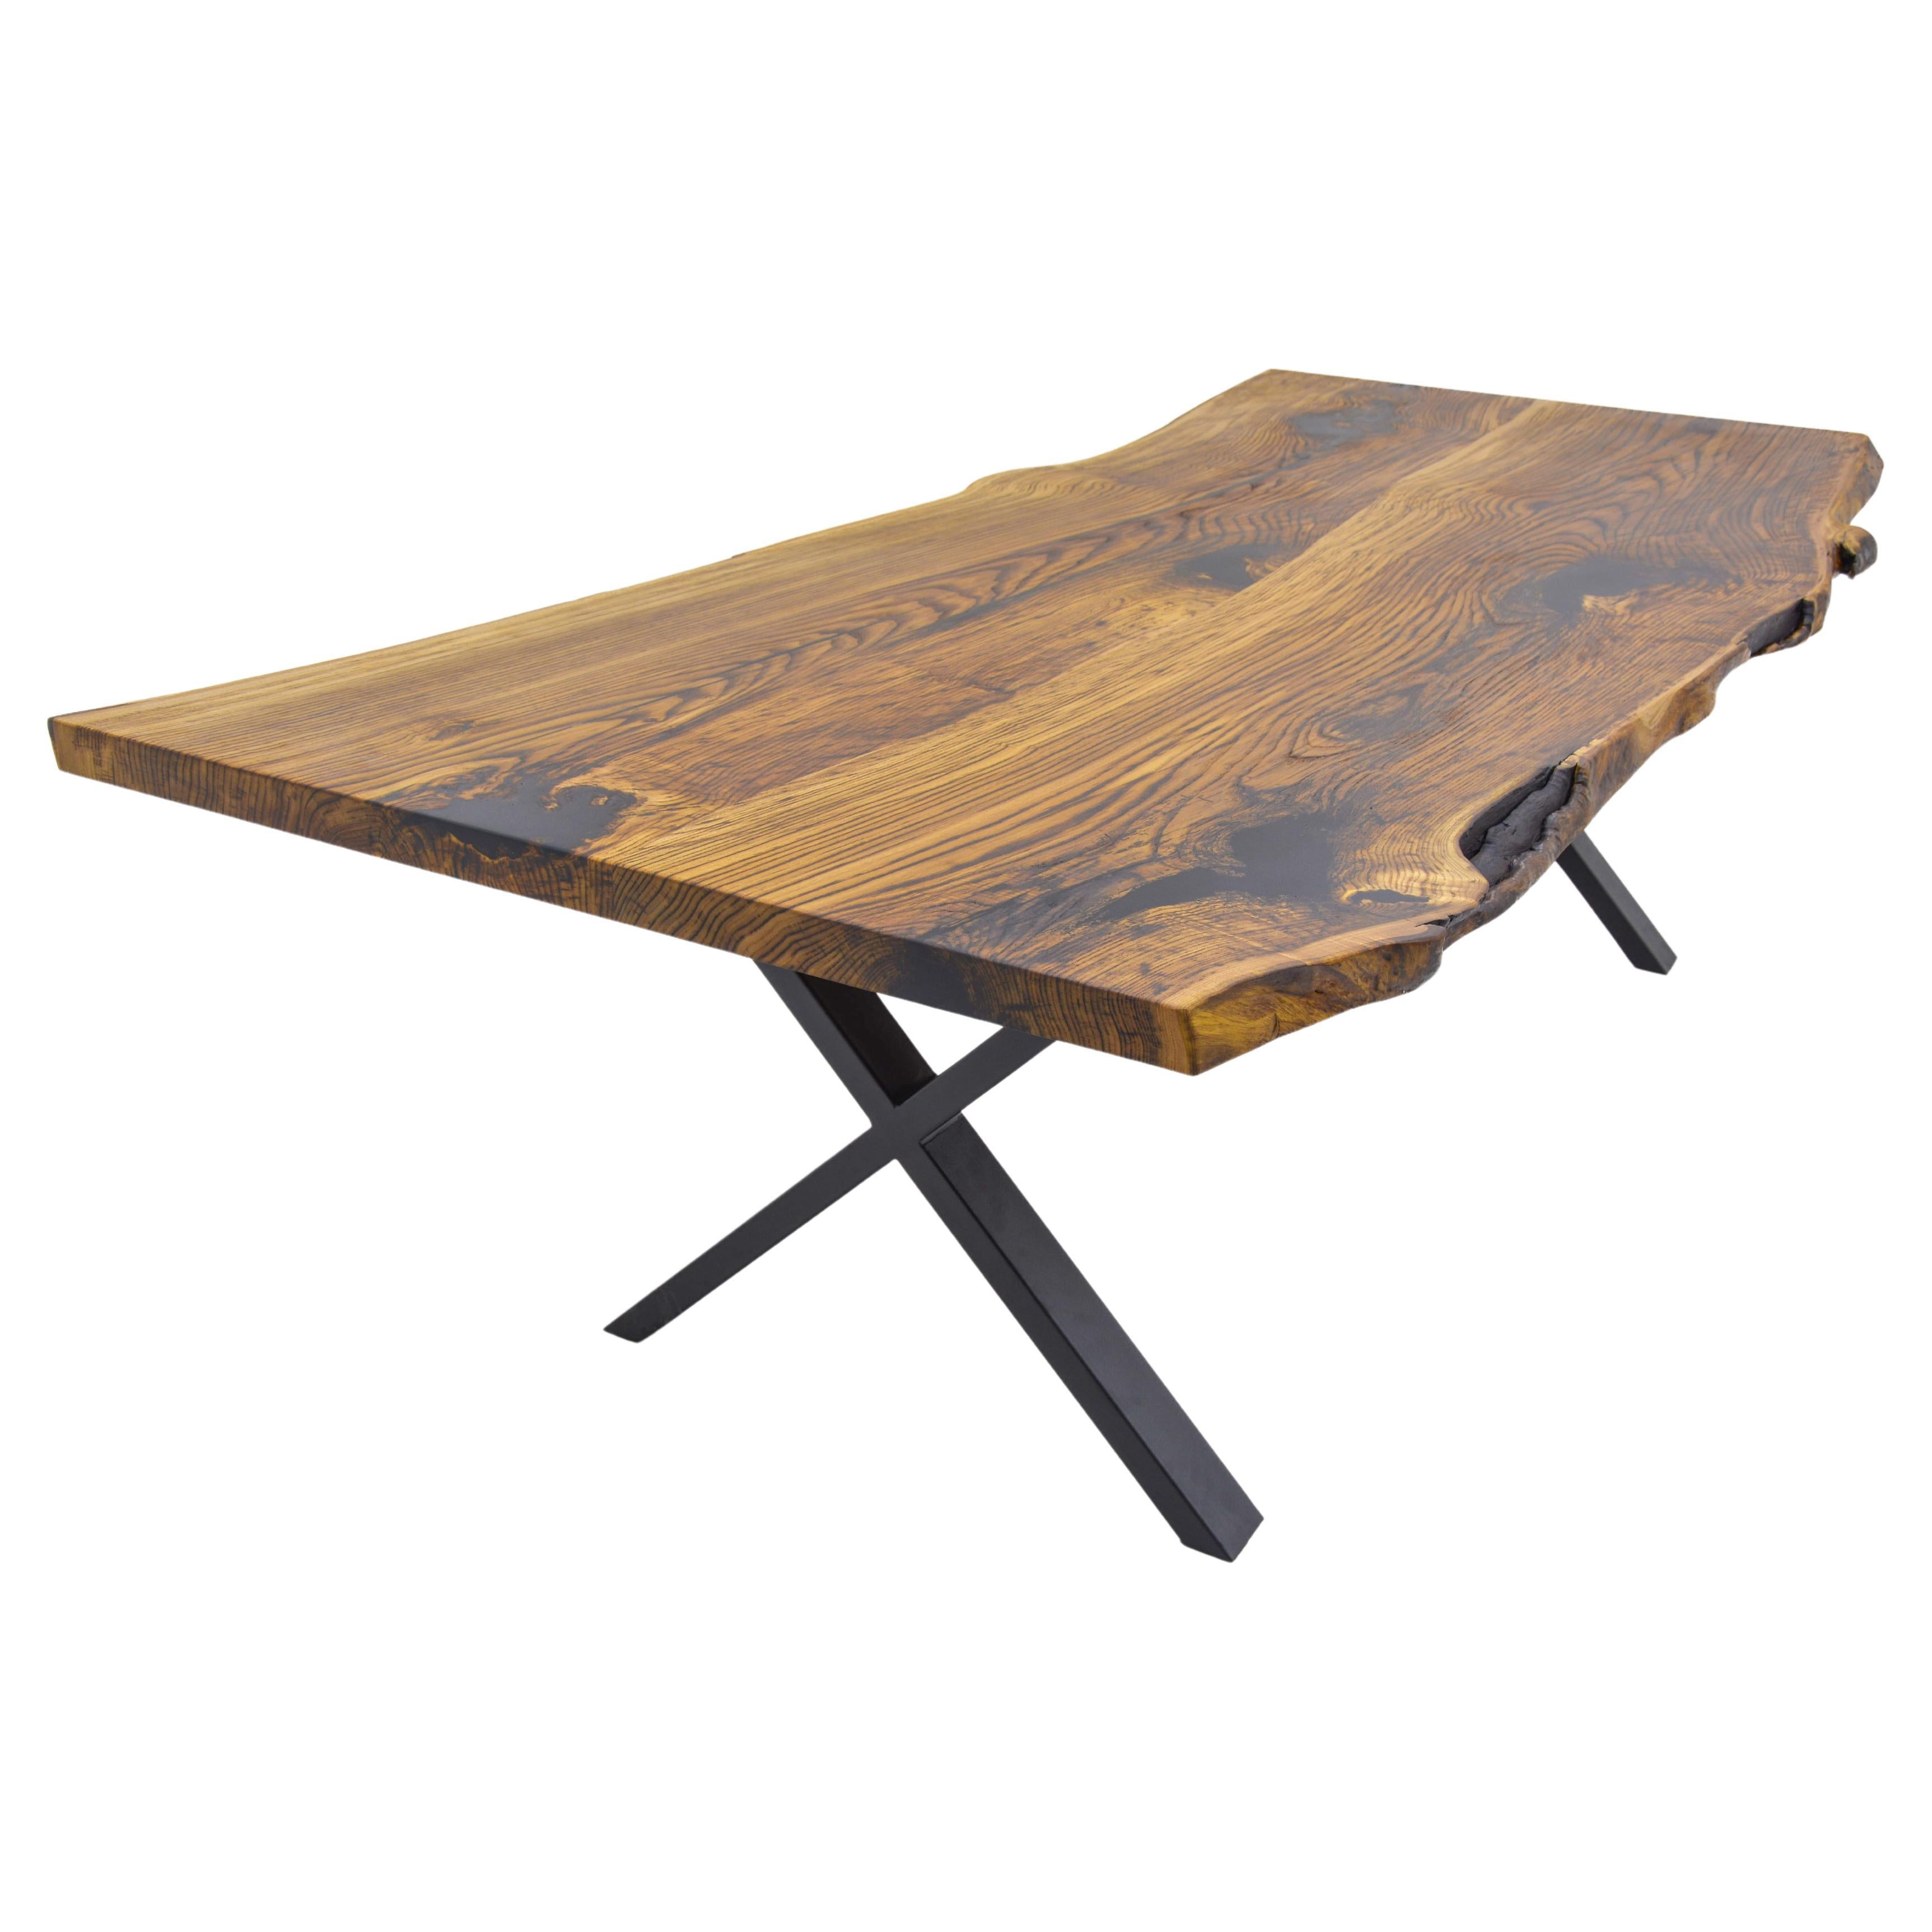 Table de cuisine en châtaignier sur mesure 

Cette table est fabriquée en bois de châtaignier. Les veines et la texture du bois décrivent l'aspect d'un bois de châtaignier naturel.
Elle peut être utilisée comme table de salle à manger ou comme table